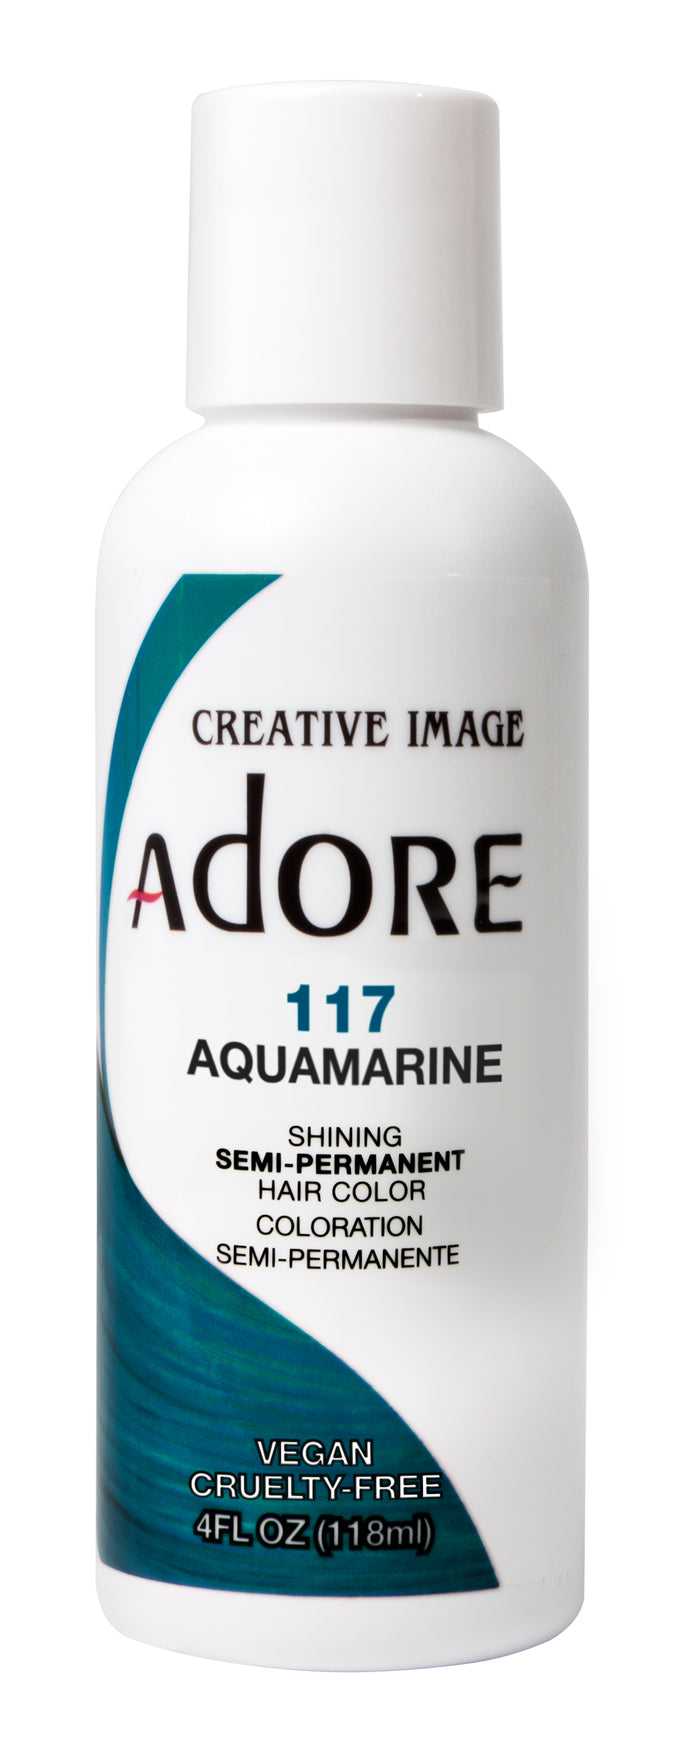 Adore aquamarine 117